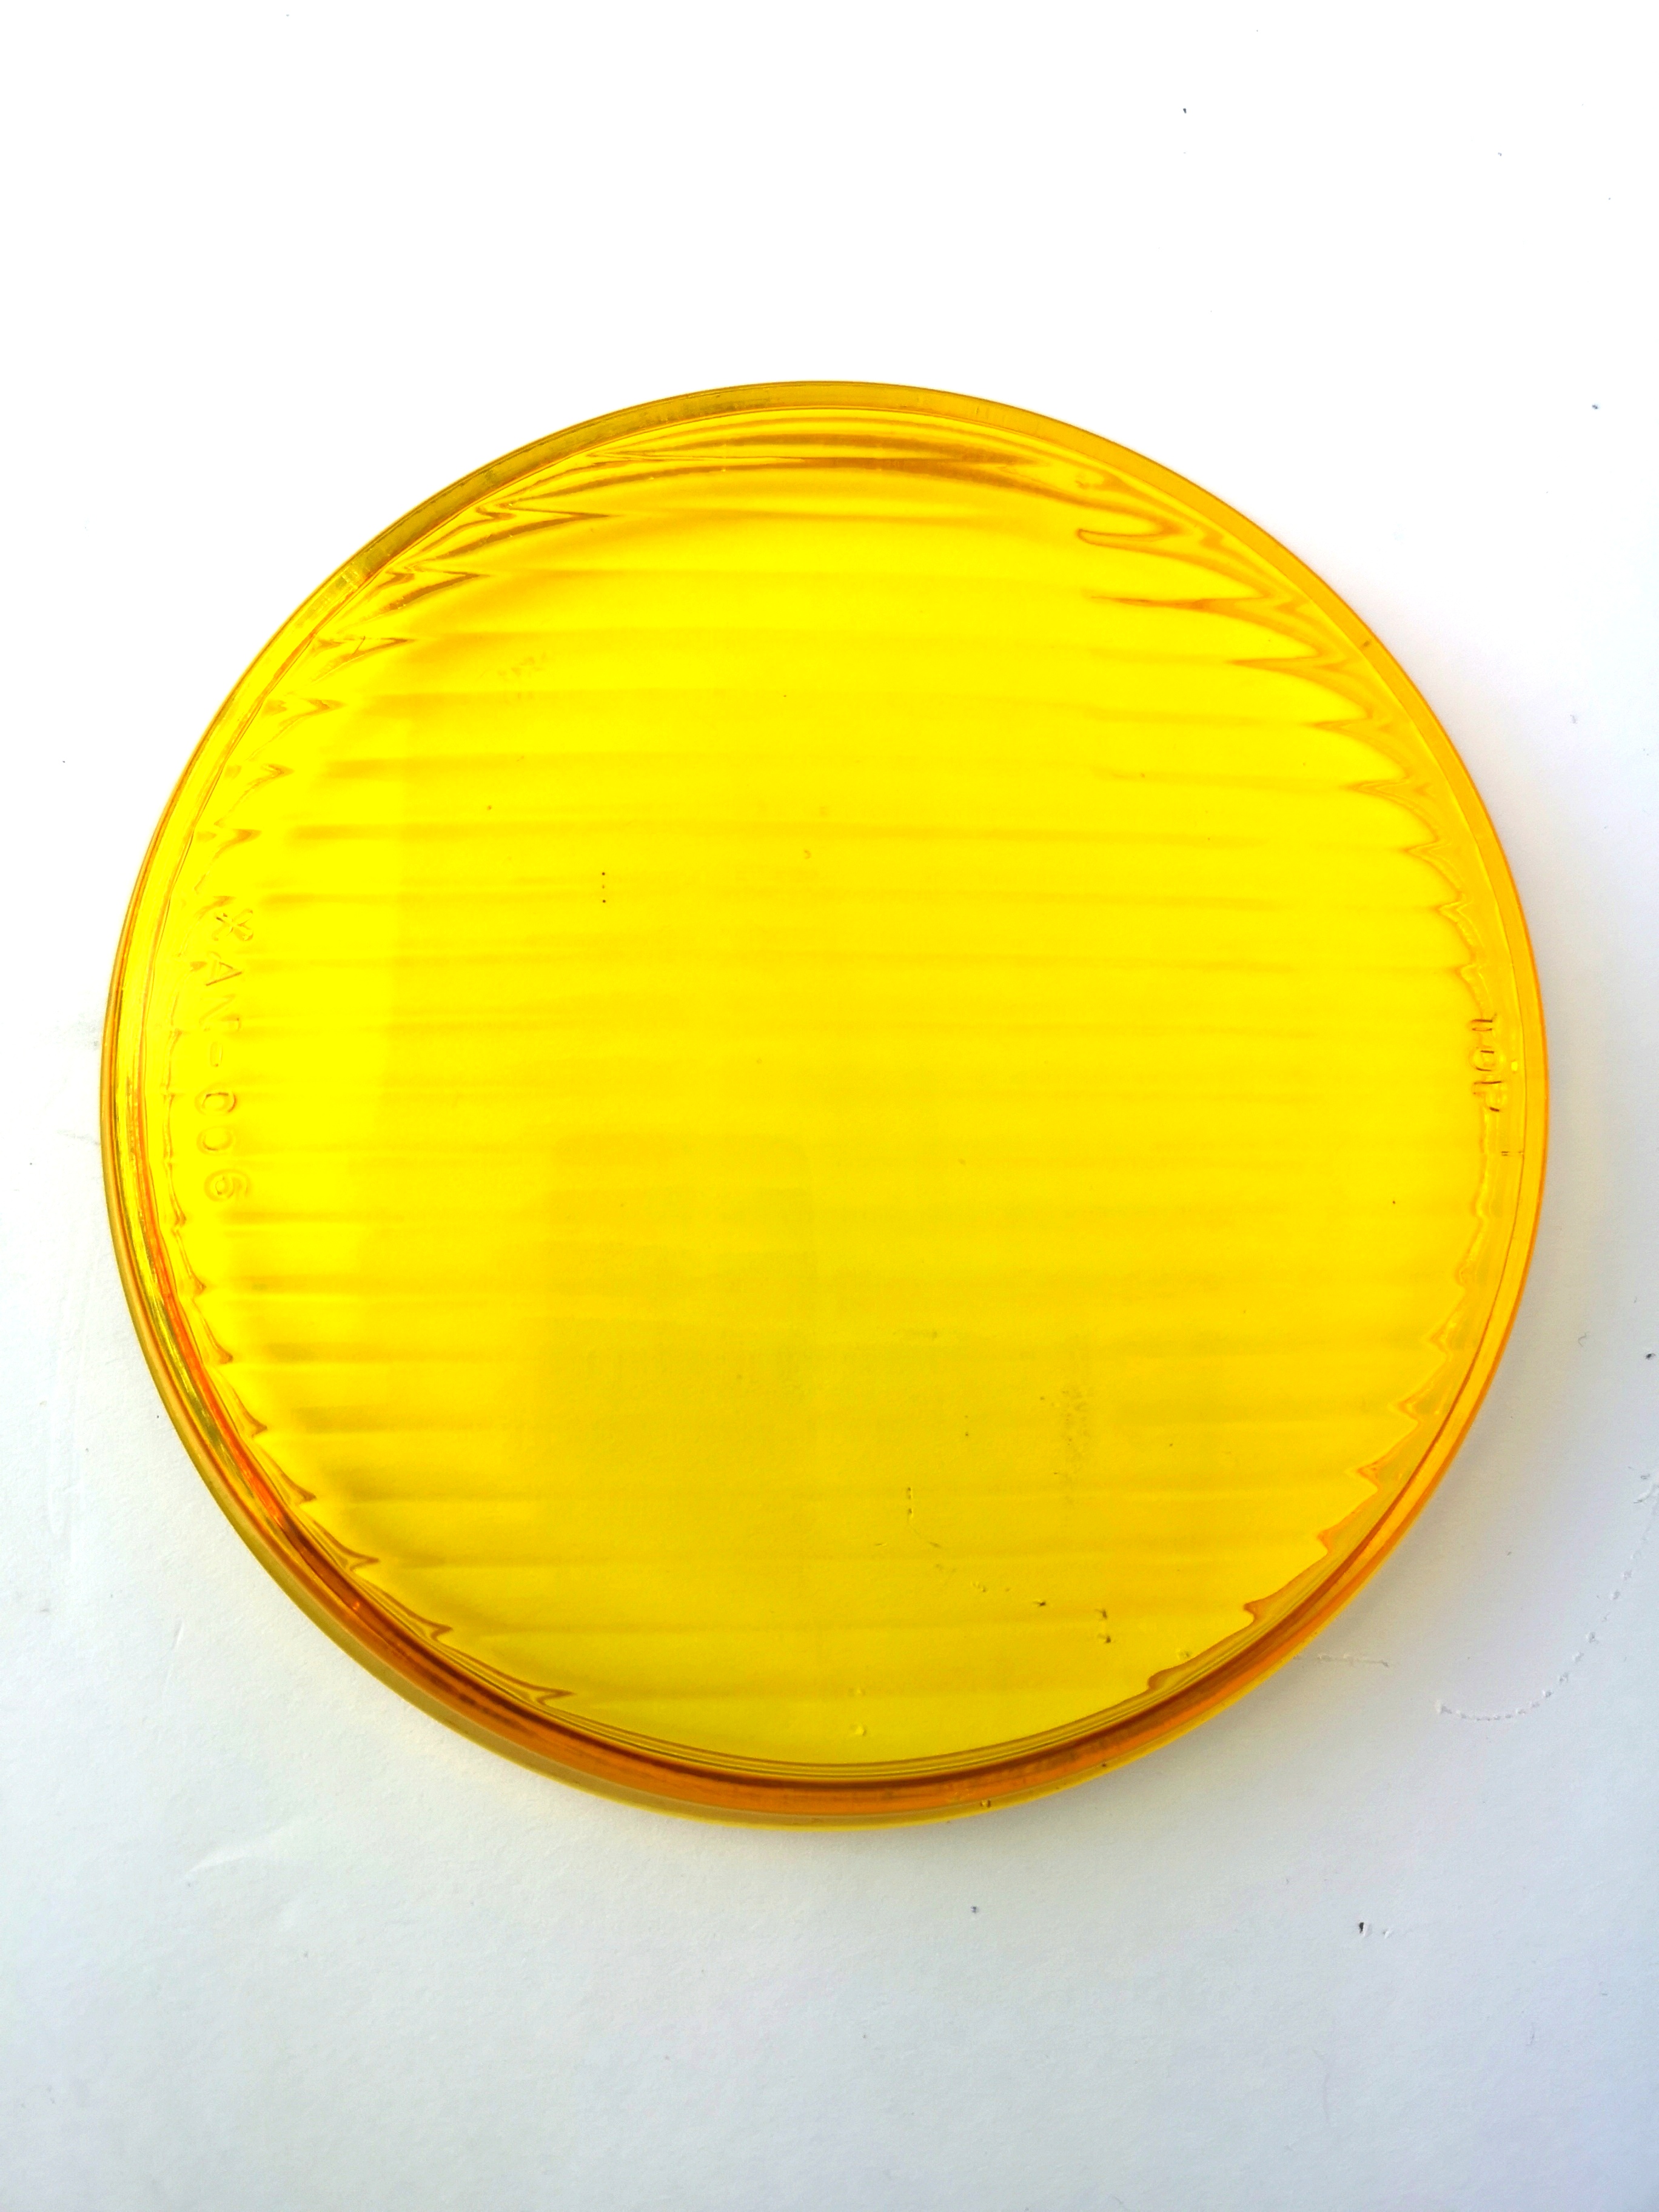 Cristal de repuesto para lámpara delantera NX 453 452, amarillo